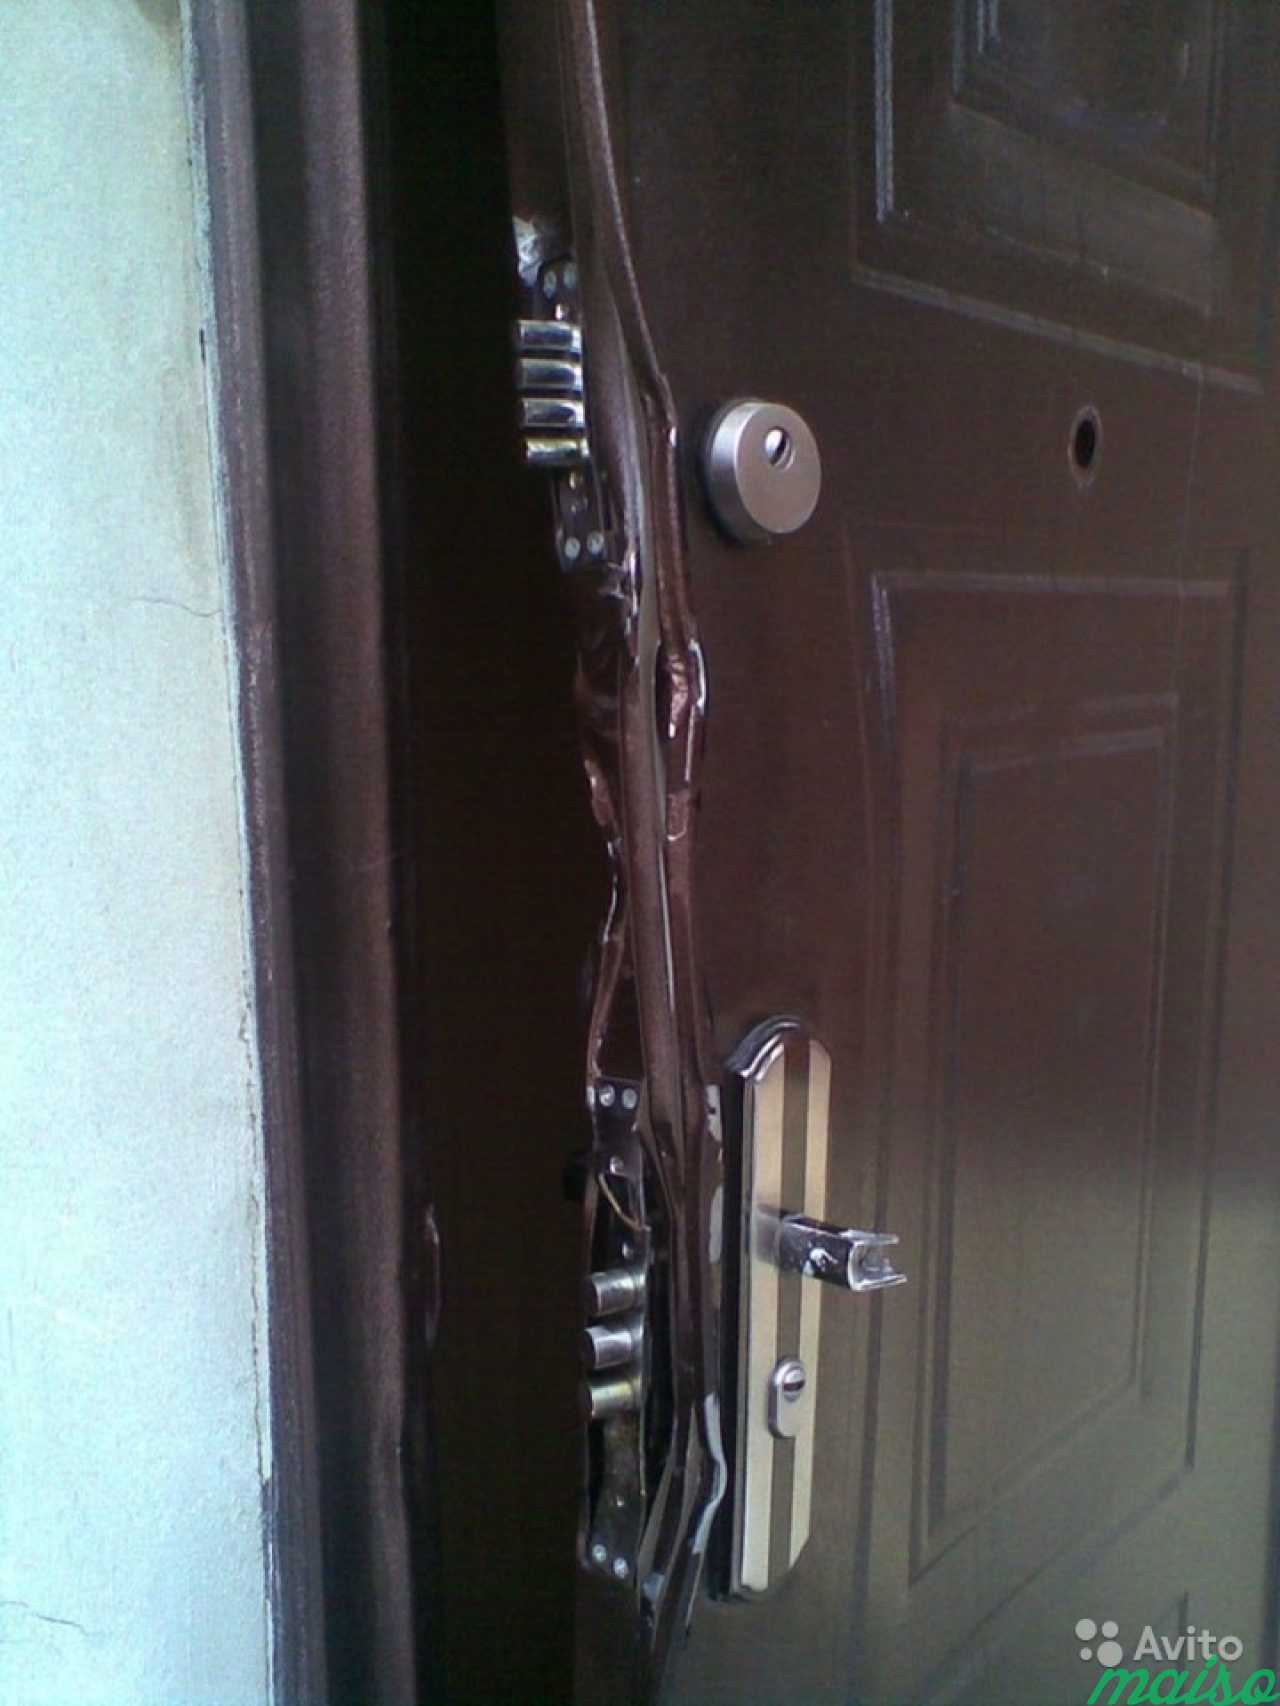 Вскрытие замка двери квартиры. Китайская дверь входная GBZG Кайзер замки. Взломанная входная дверь. Сломанные двери металлические входные. Поврежденная входная дверь.